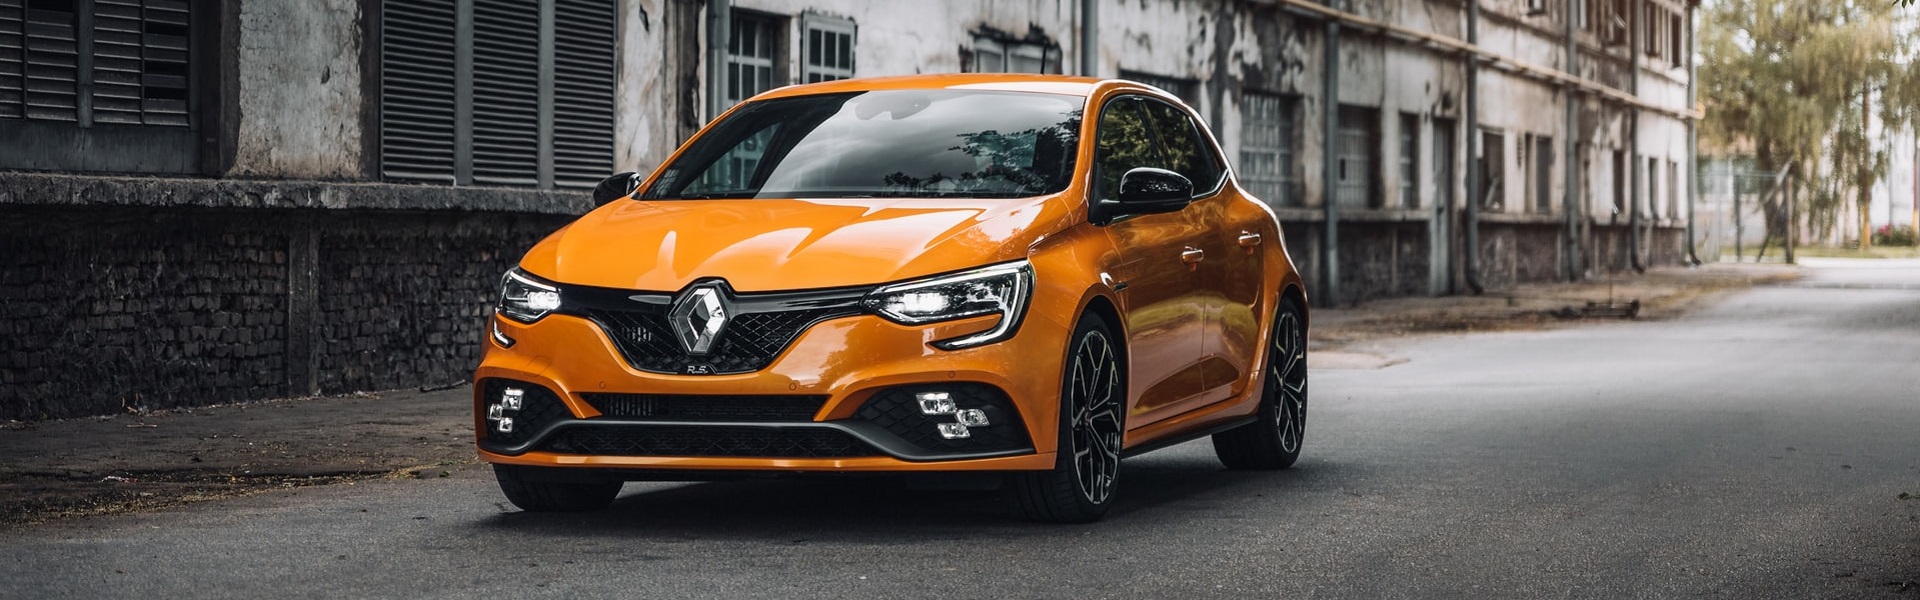 Kasko osiguranje | Renault delovi